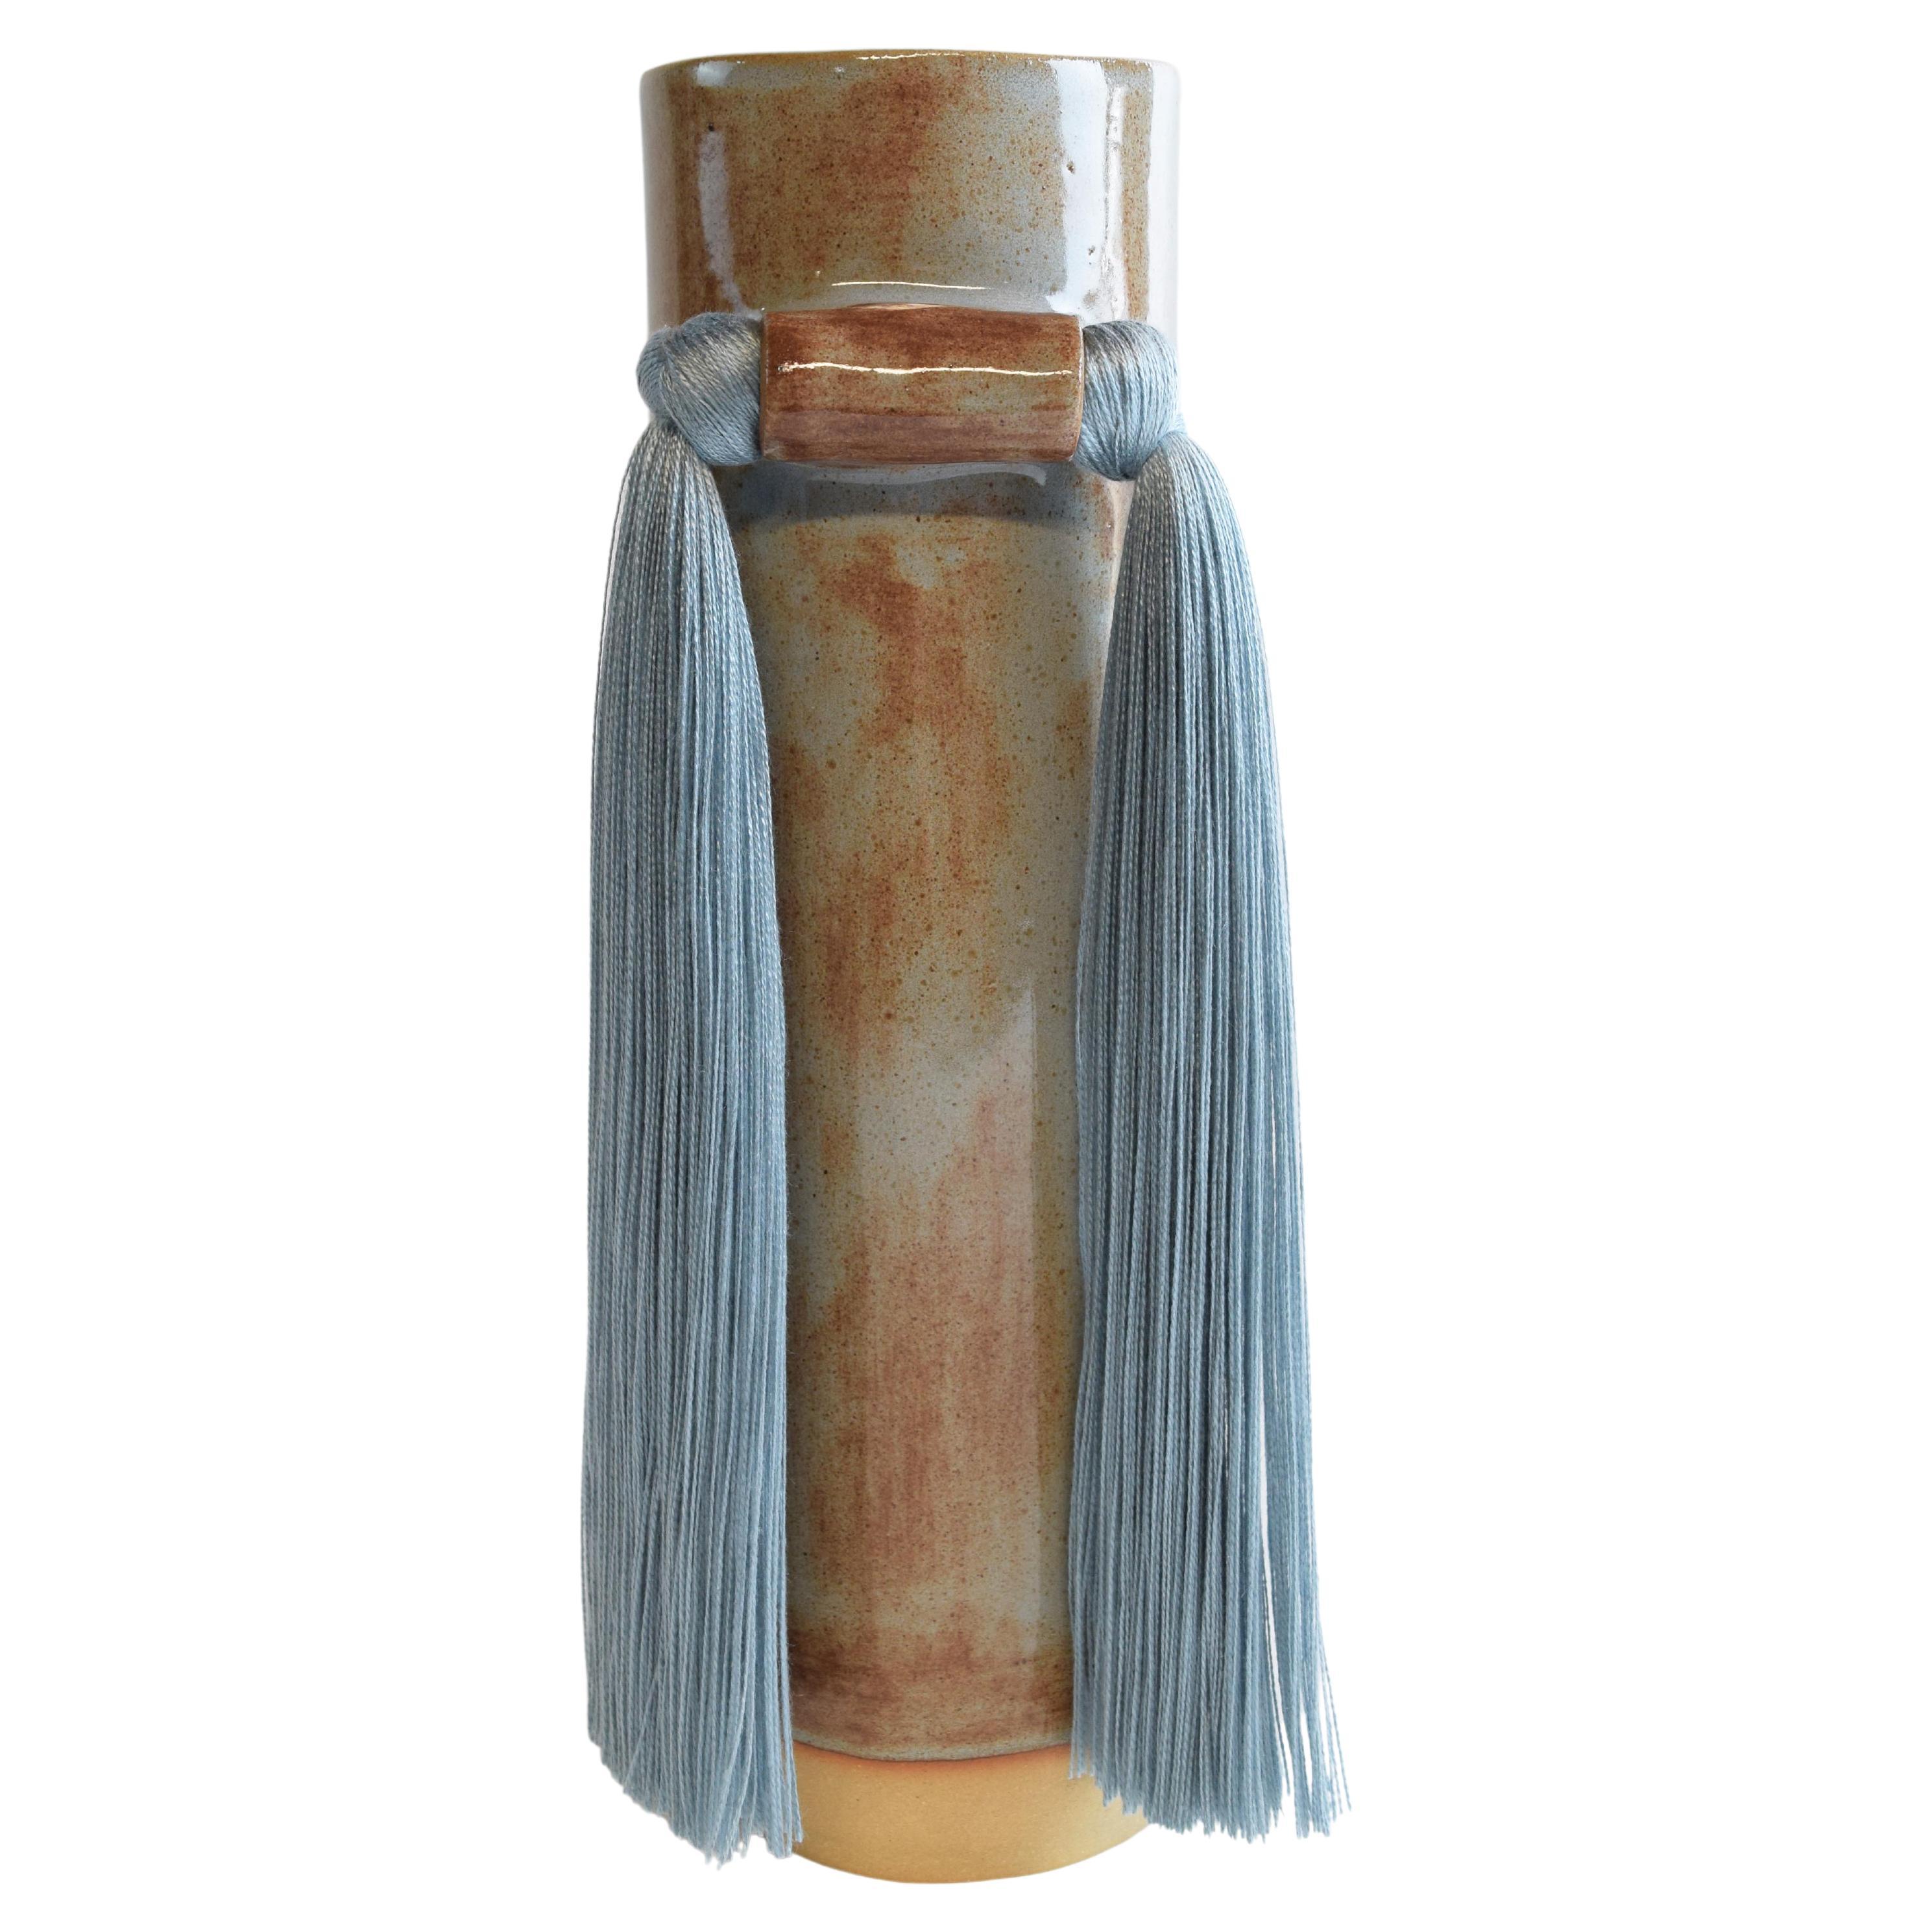 Vase en céramique fait à la main n° 531 à glaçure bleue Shino avec frange en tencel bleu